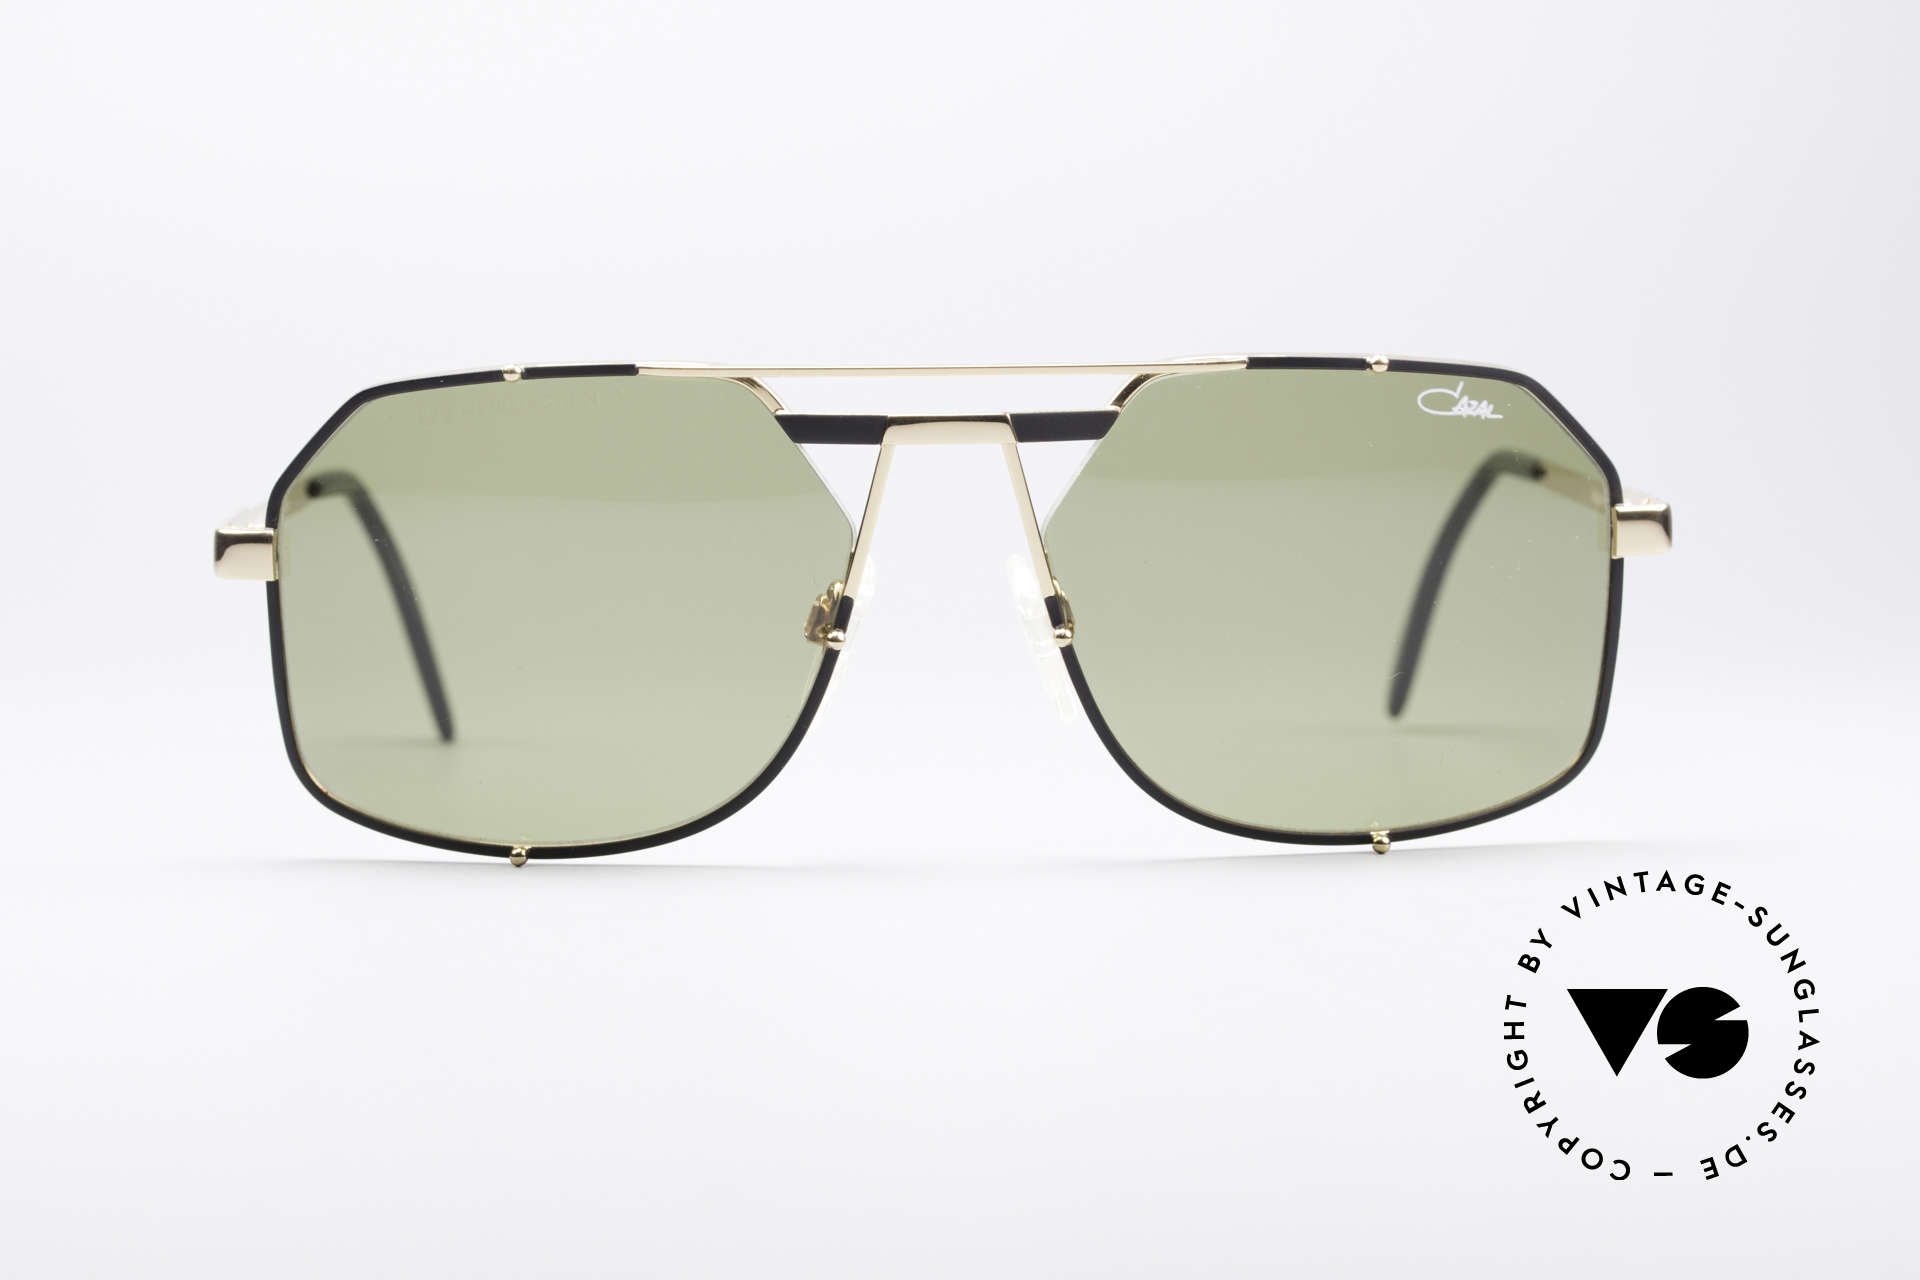 Cazal 959 90er Designer Herrenbrille, unglaublich hohe Qualität & Top-Tragekomfort, Passend für Herren